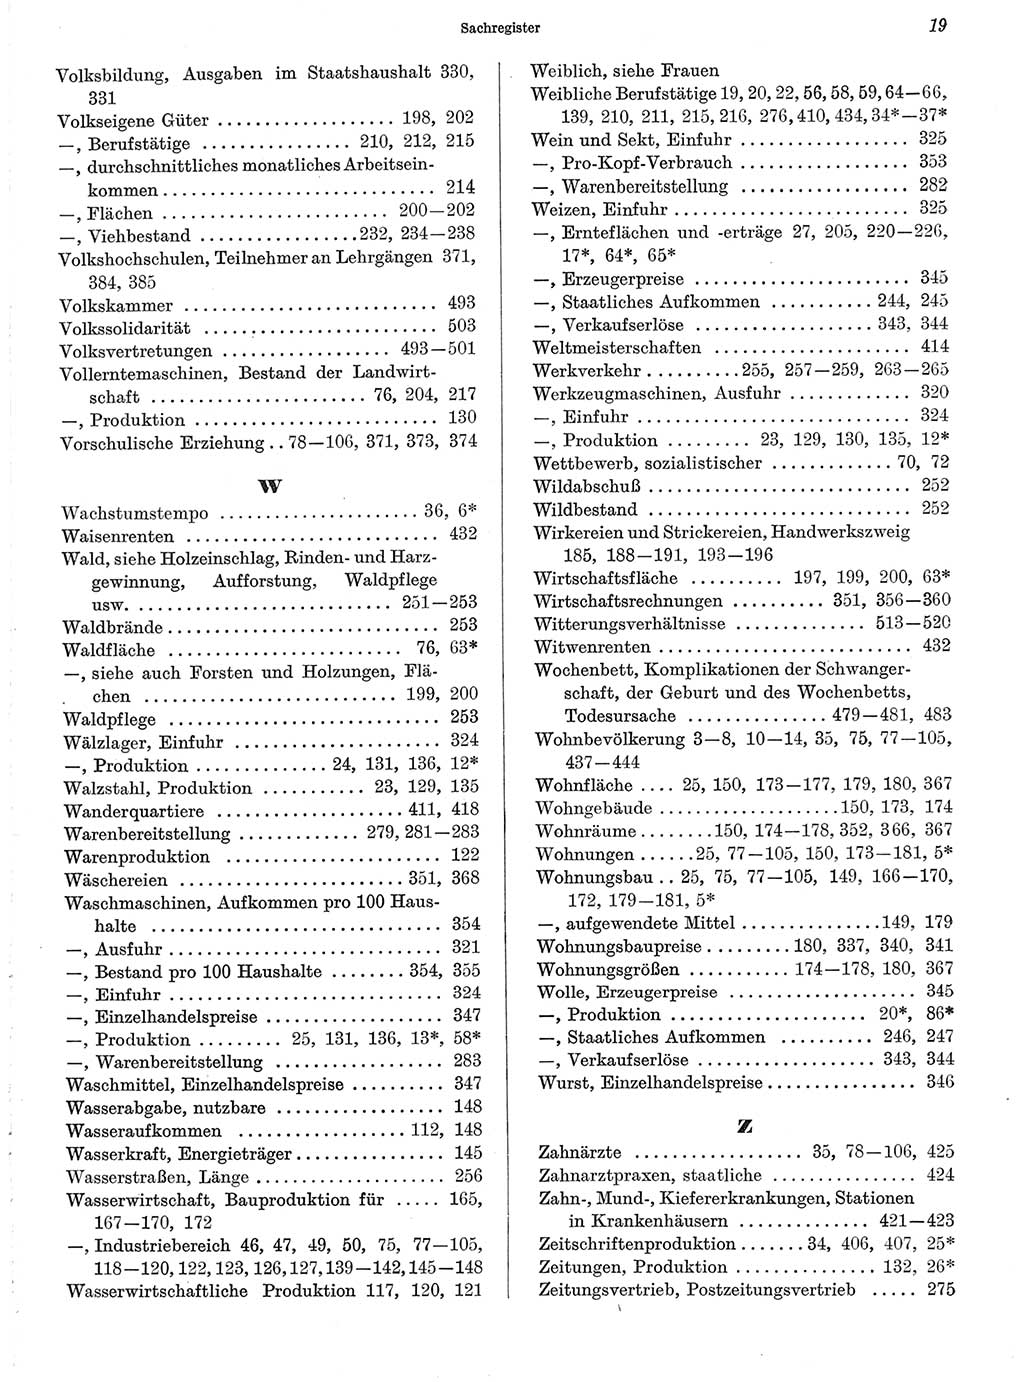 Statistisches Jahrbuch der Deutschen Demokratischen Republik (DDR) 1972, Seite 19 (Stat. Jb. DDR 1972, S. 19)